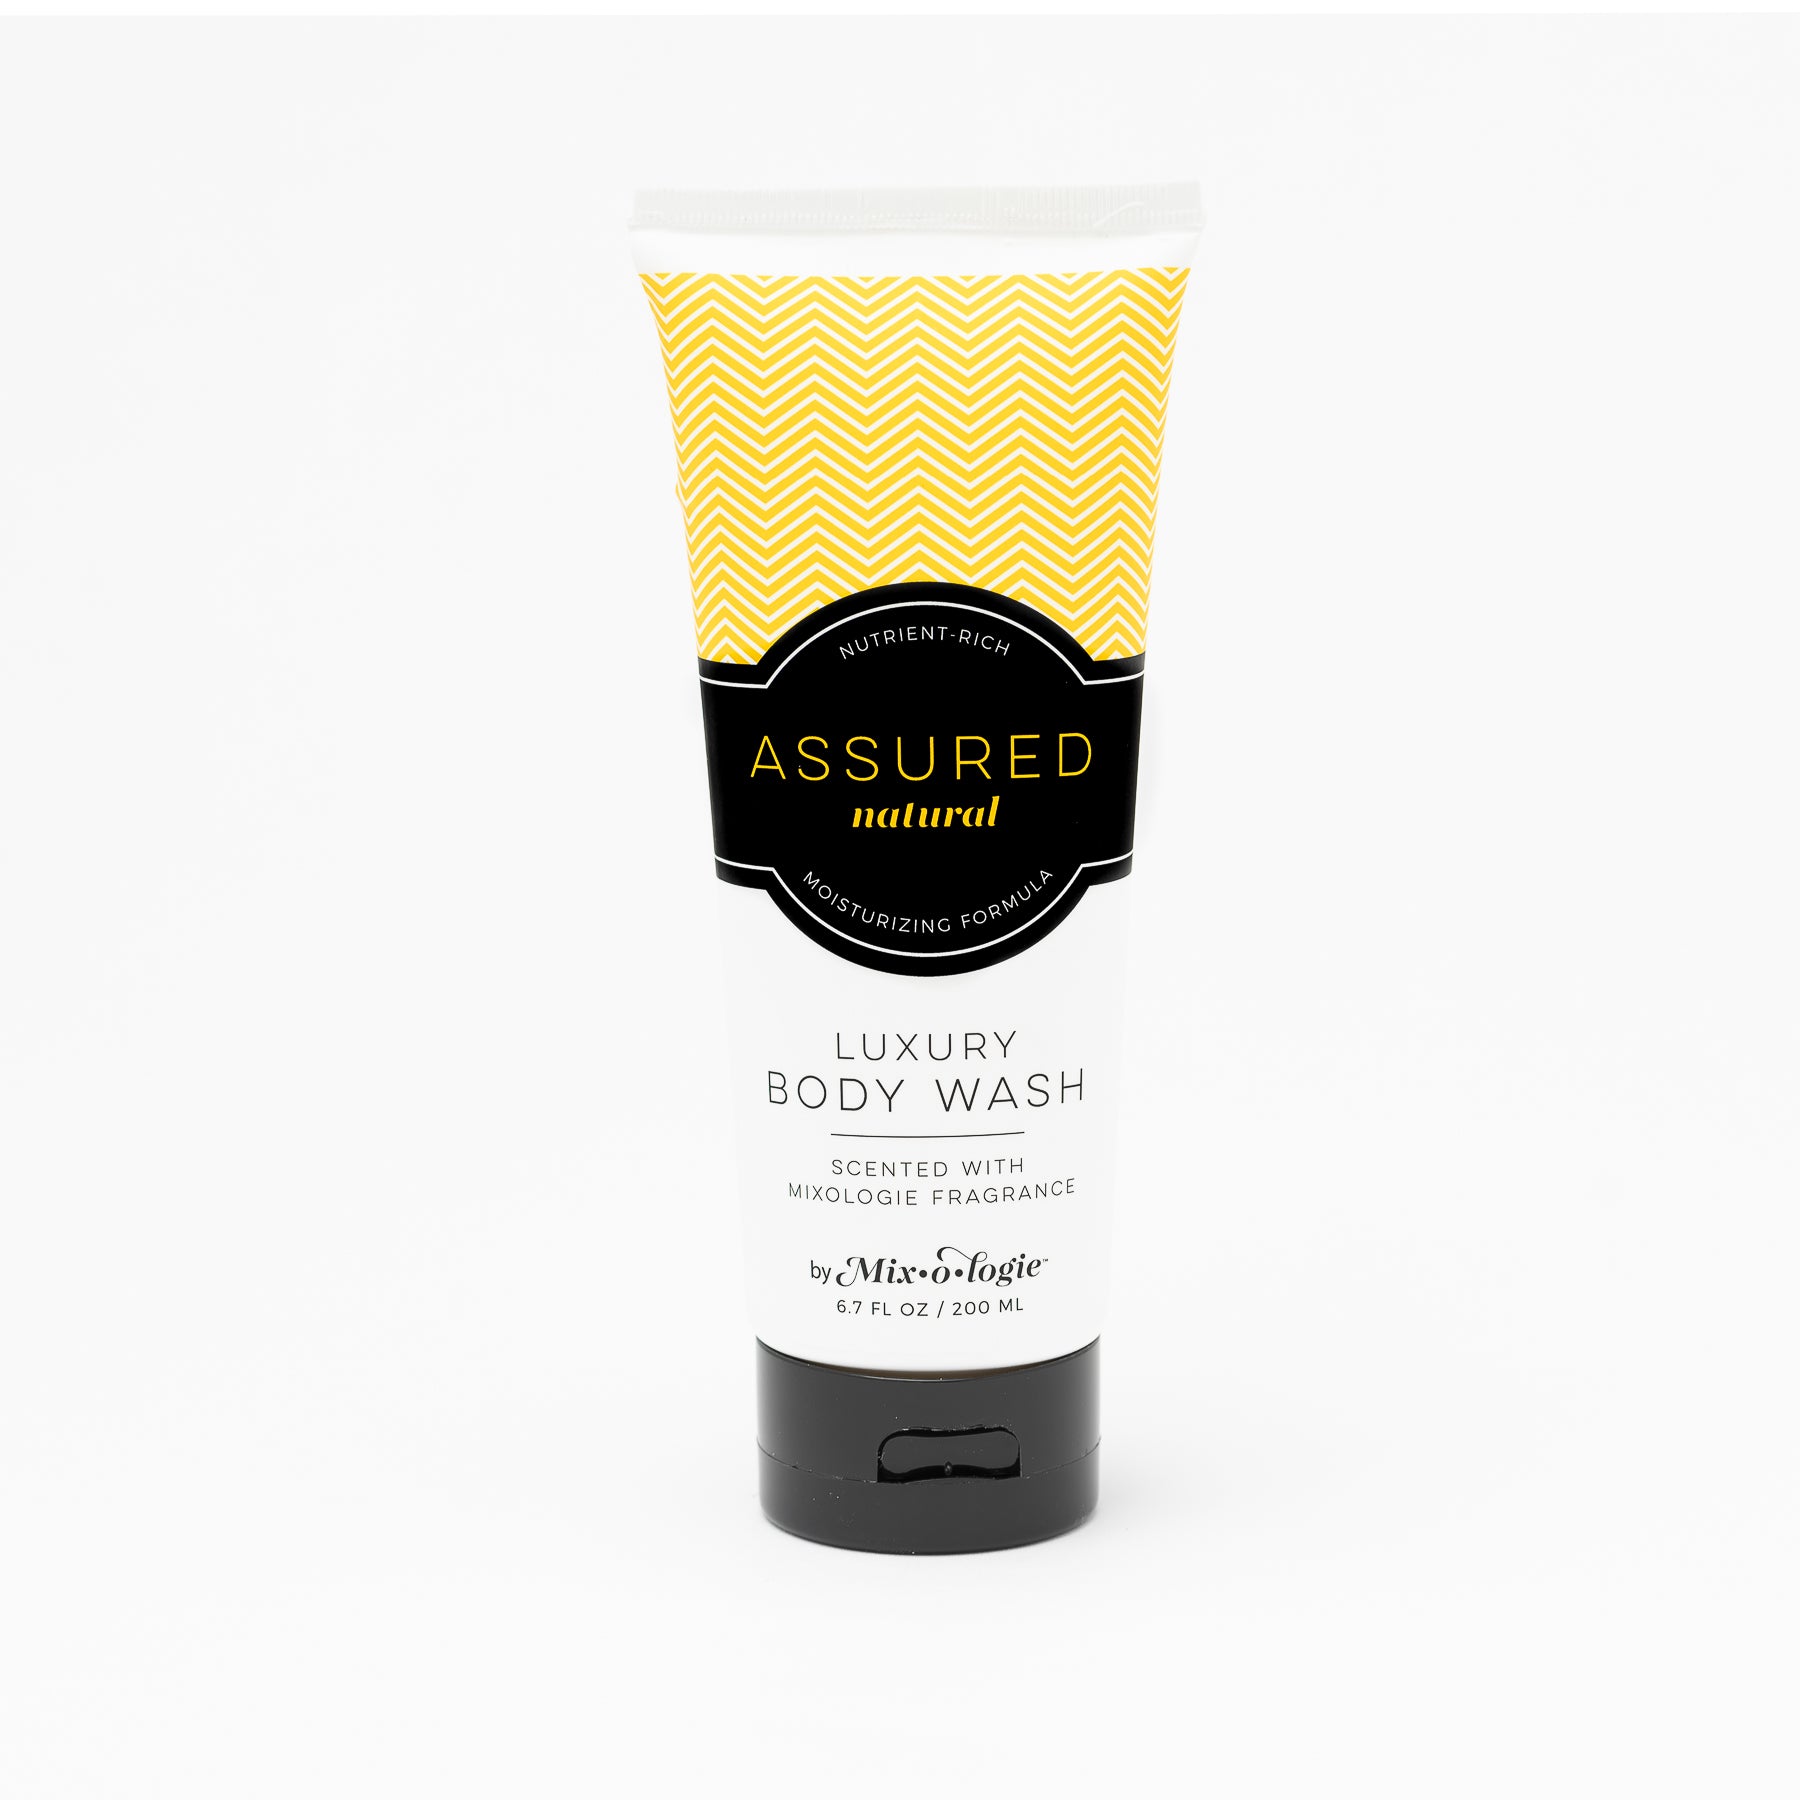 Luxury Body Wash & Shower Gel - Assured (natural) scent